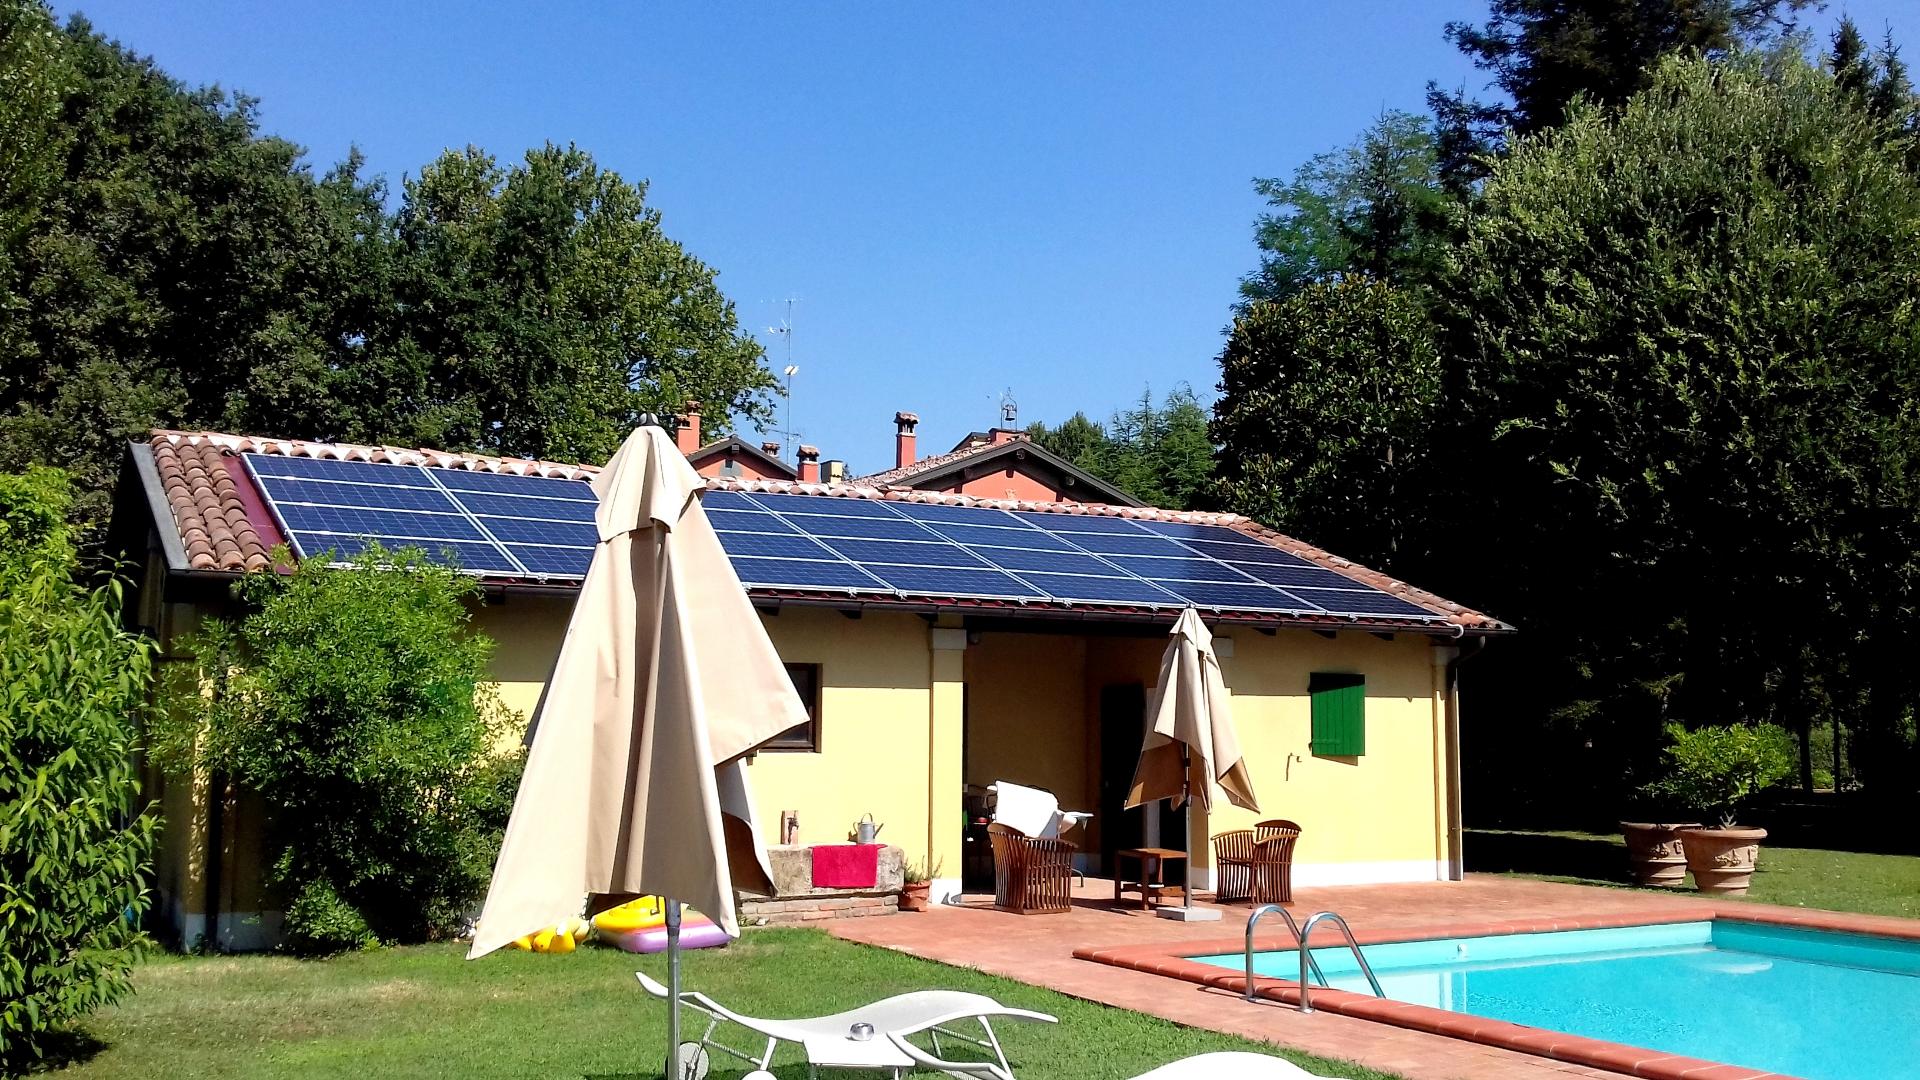 Impianto fotovoltaico da 7,7 kWp a Budrio bologna